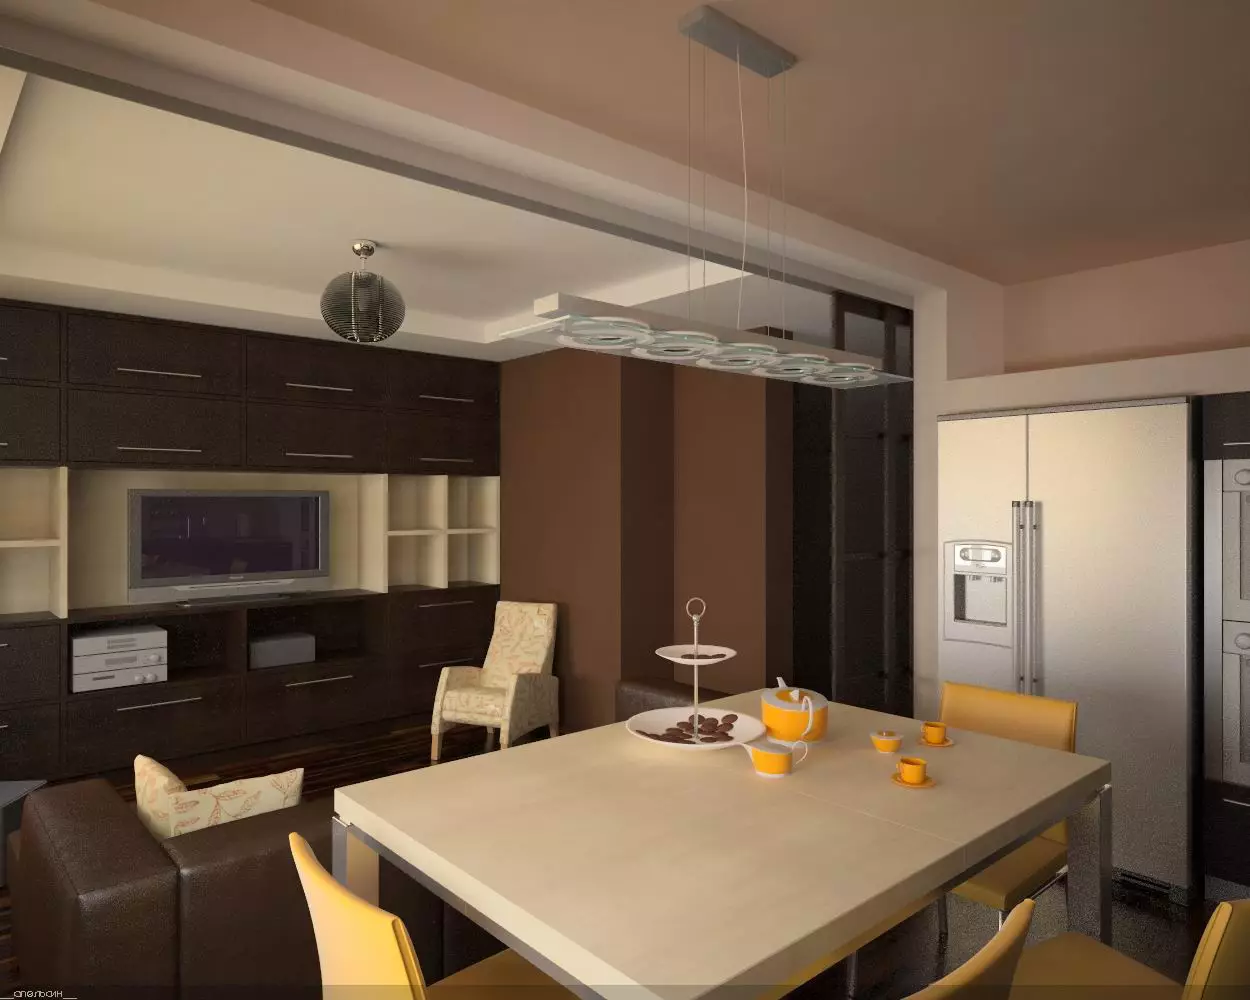 Kuchyň-obývací pokoje 13m². m (58 fotek): Možnosti designu interiéru kuchyně s pohovkou a dalším nábytkem 9516_24